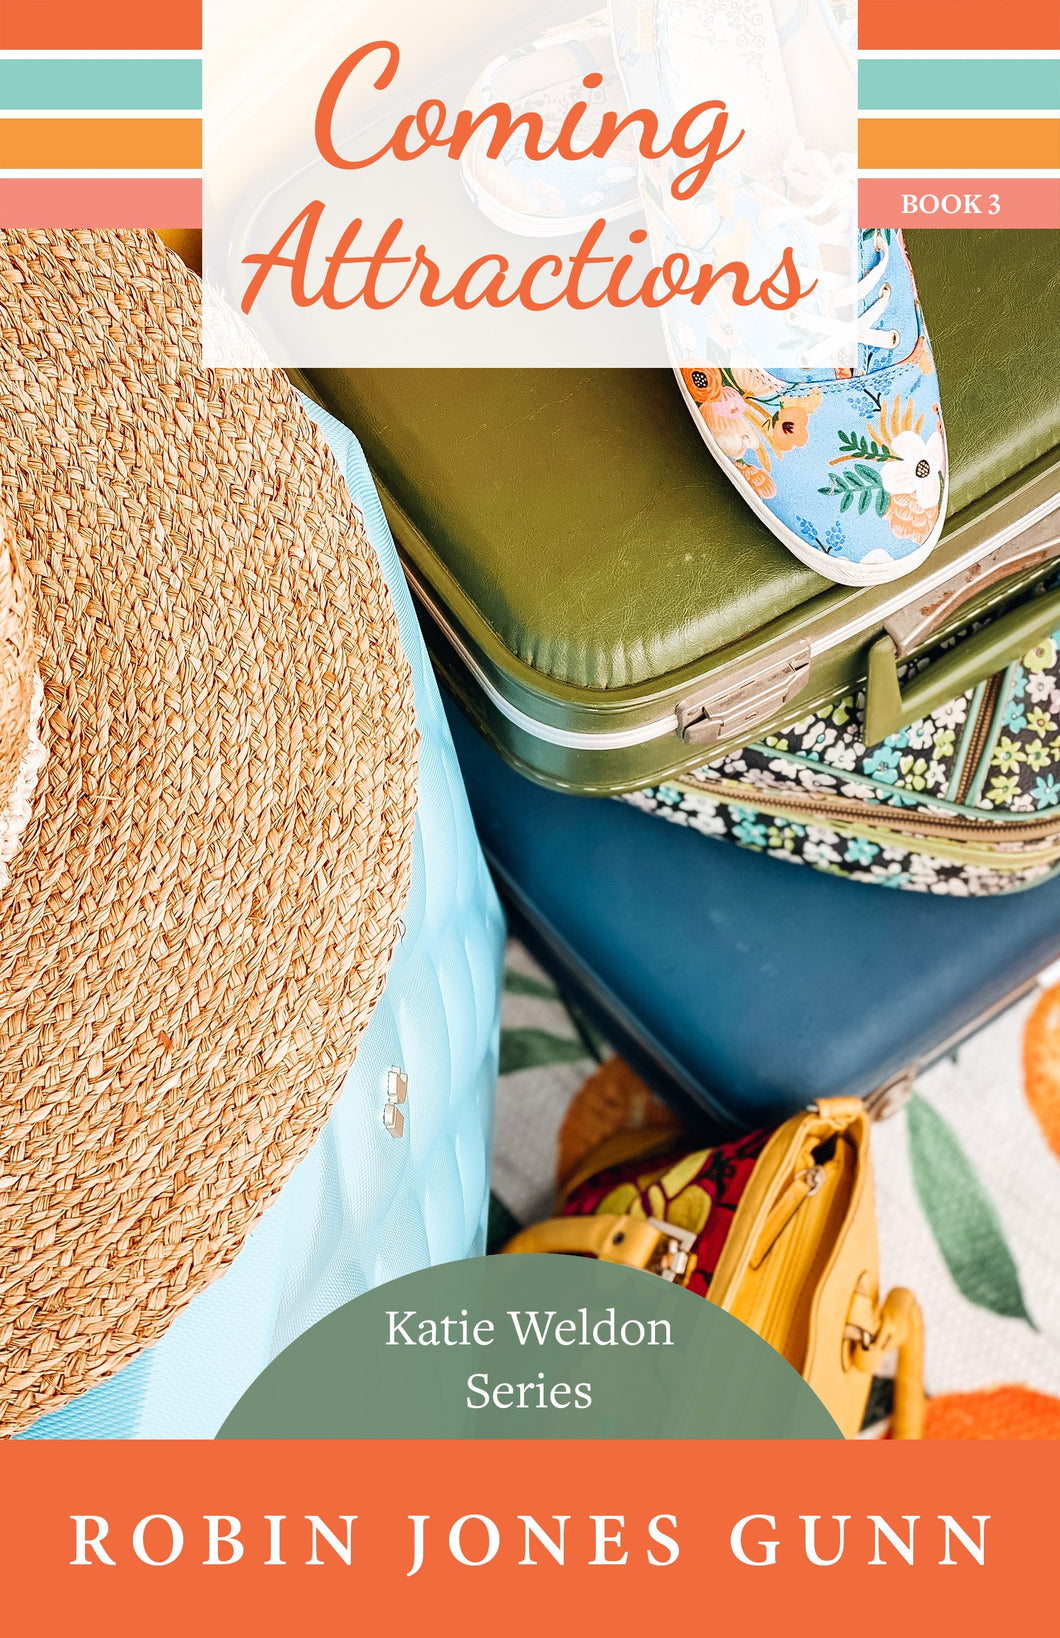 Coming Attractions-Katie Weldon Series #3